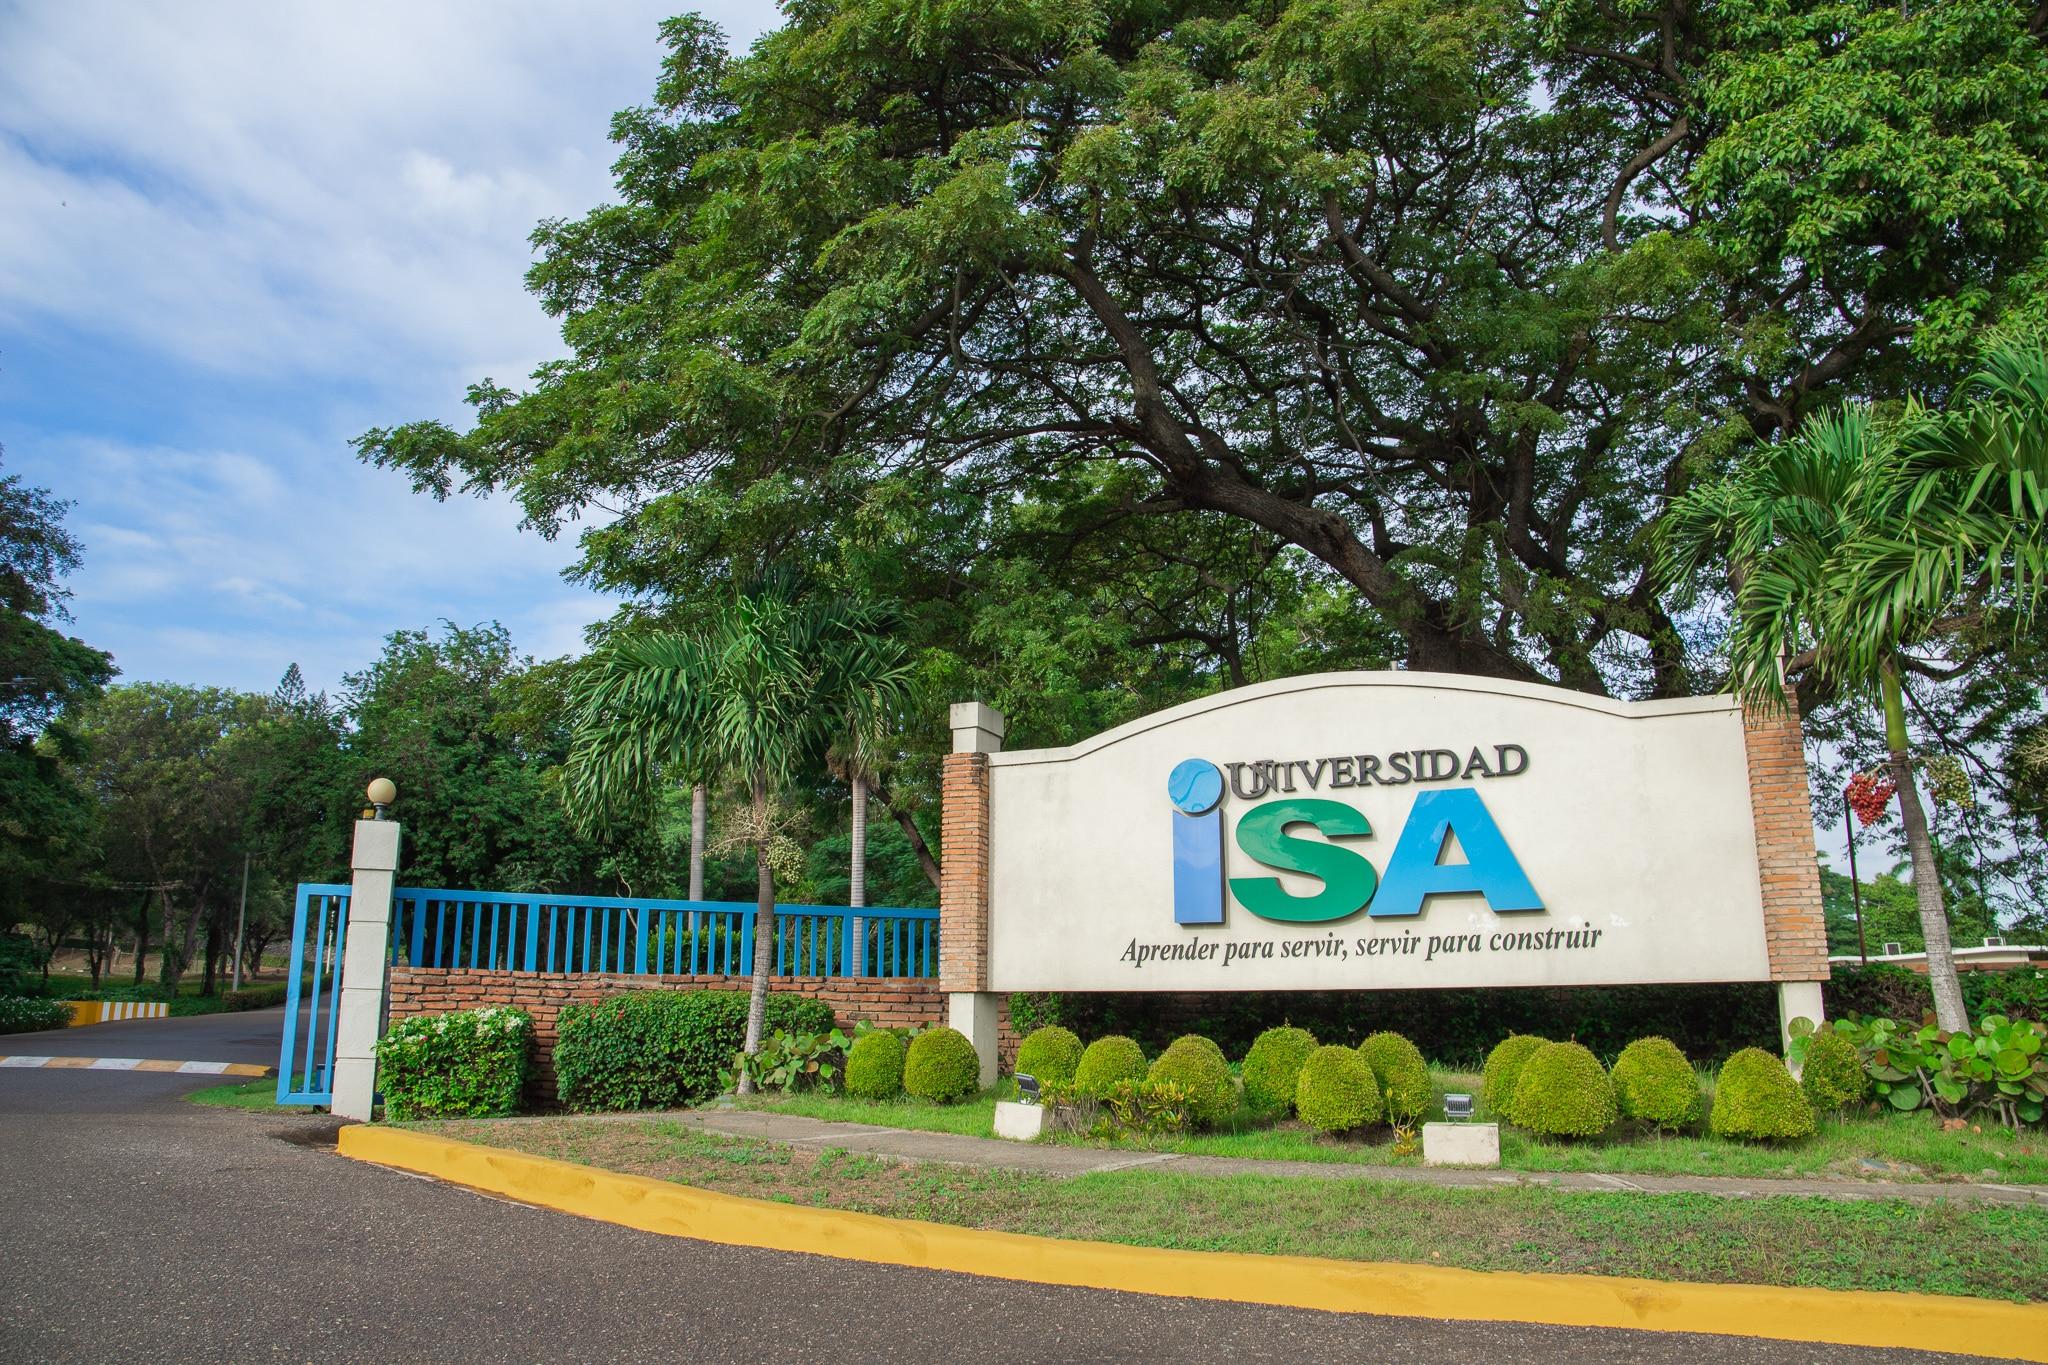 Campus Universidad ISA - 0